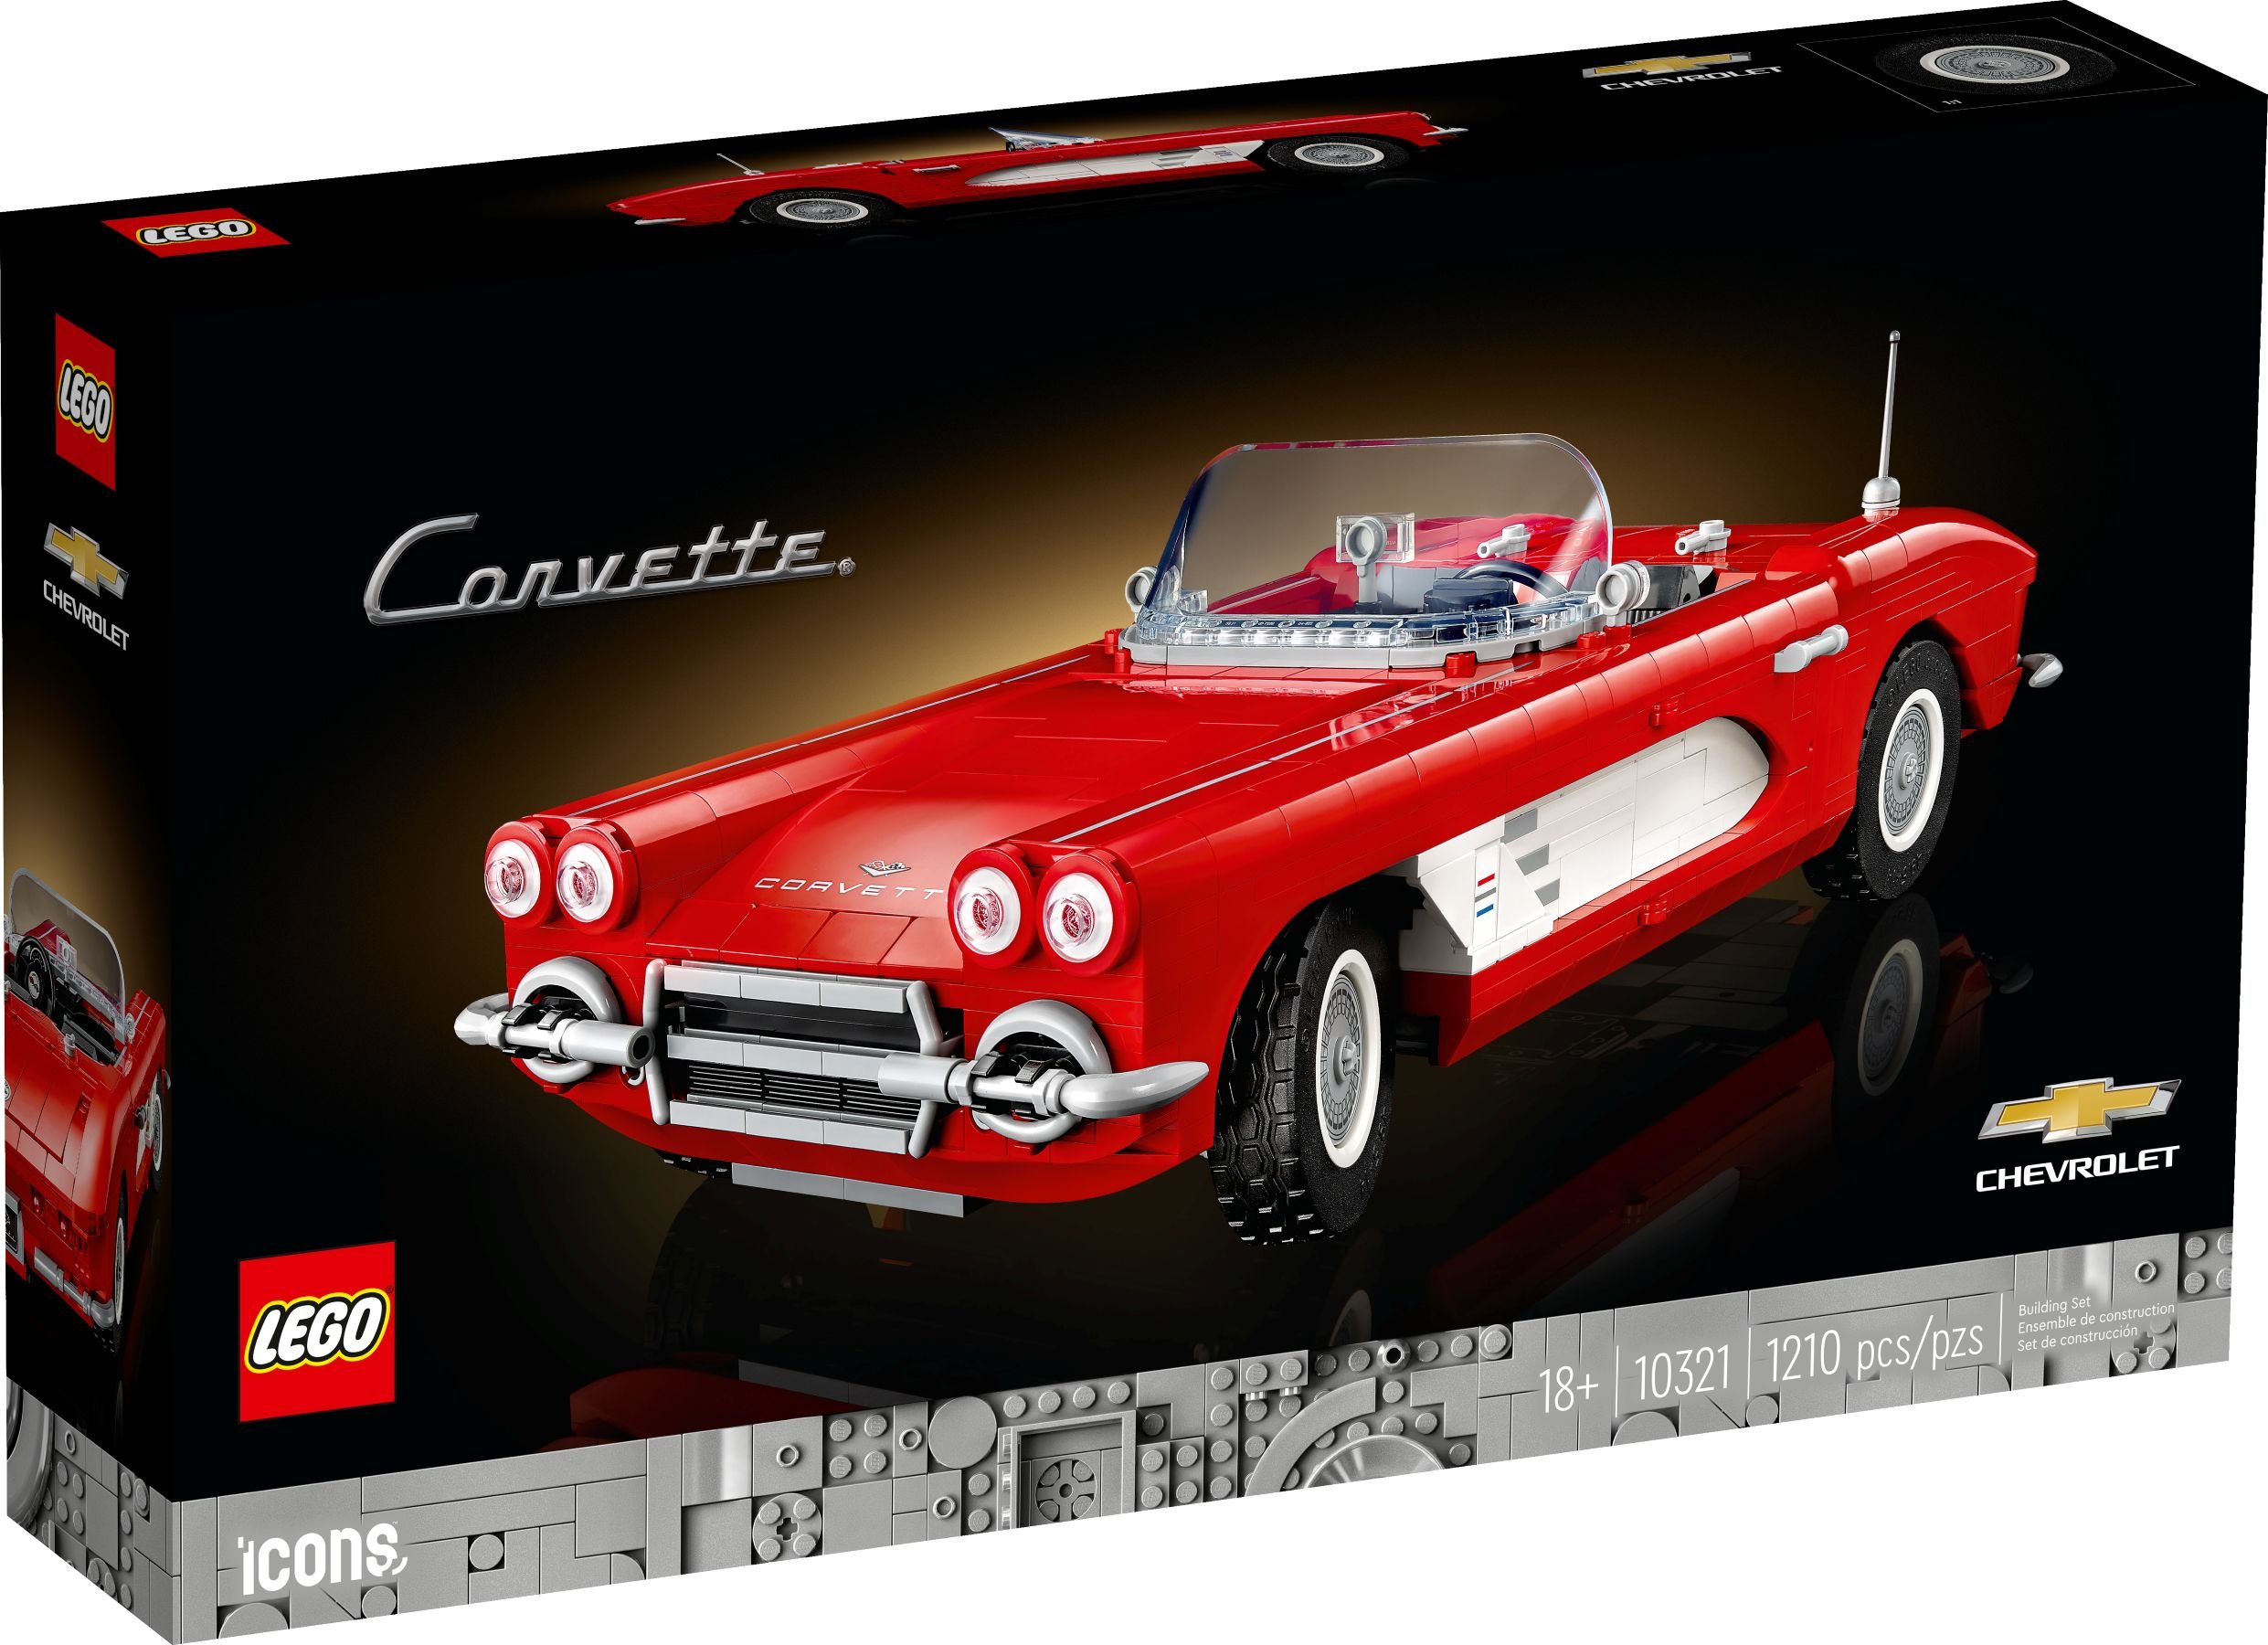 LEGO Advanced Models 10321 Corvette LEGO_10321_alt1.jpg